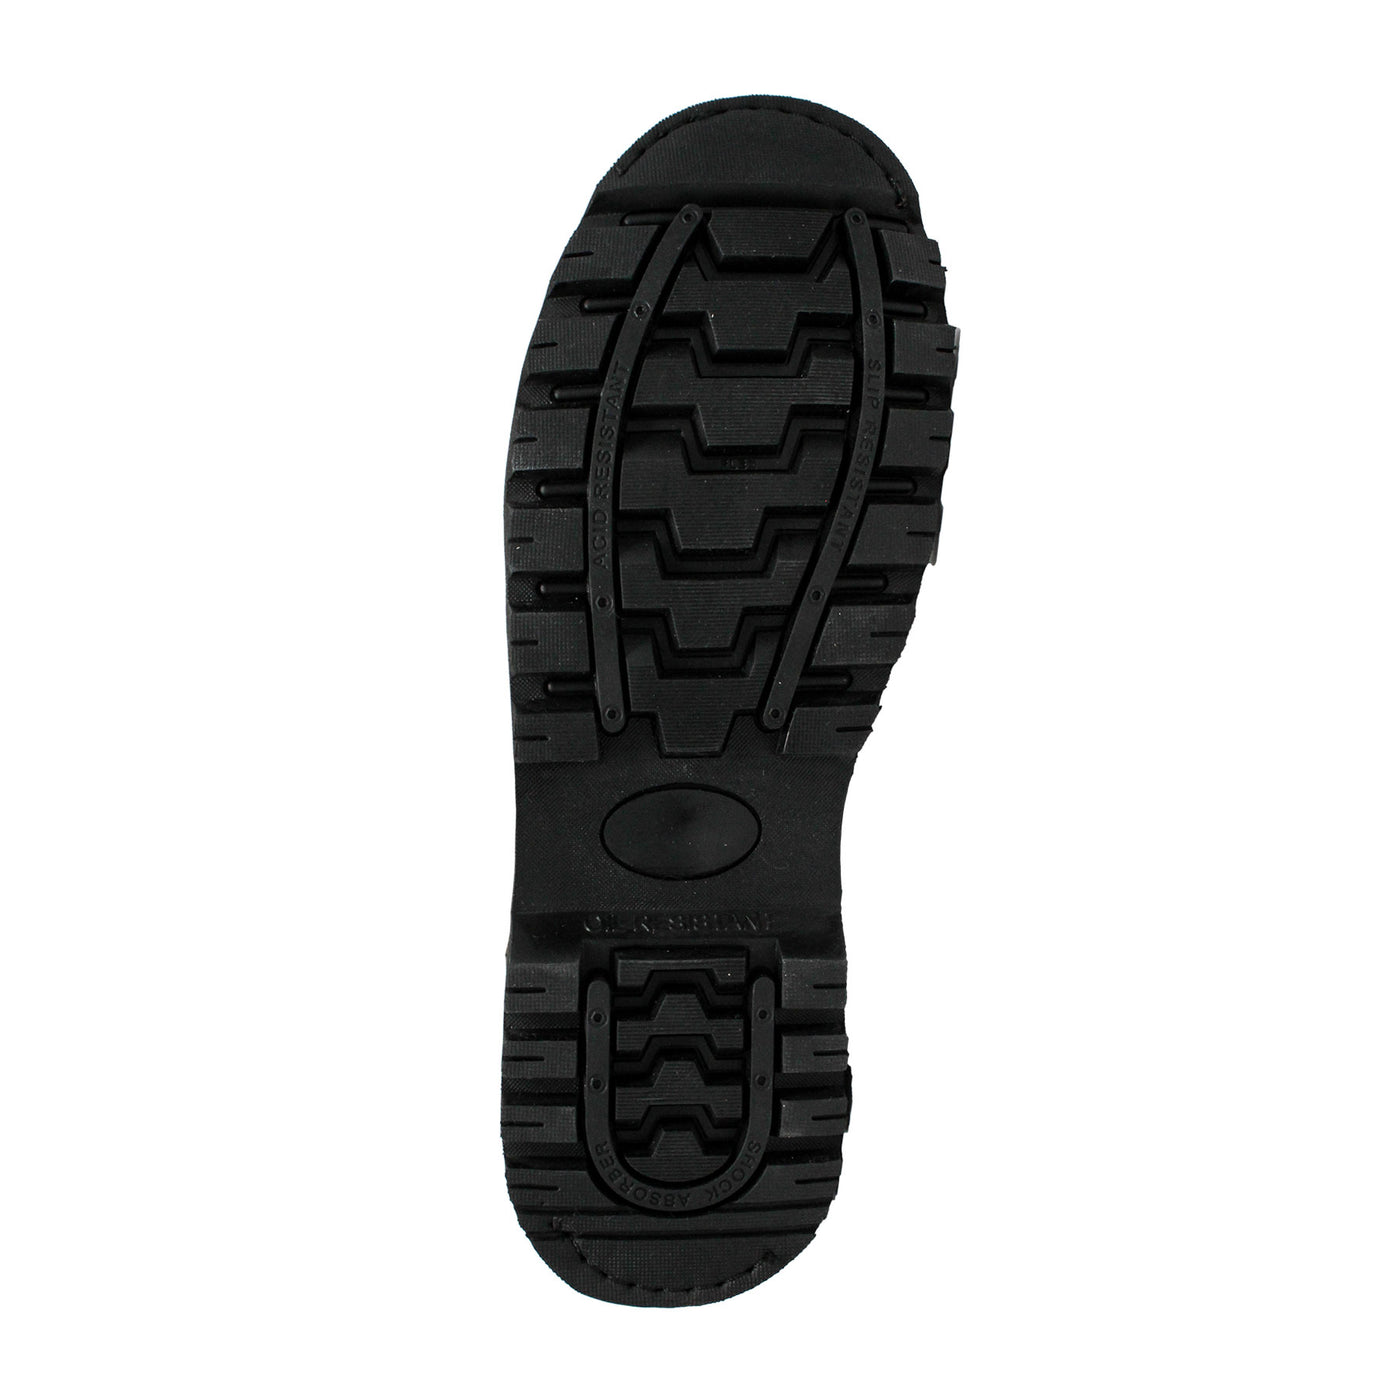 Men's 6" Brown Work Boot - 1018 - Shop Genuine Leather men & women's boots online | AdTecFootWear